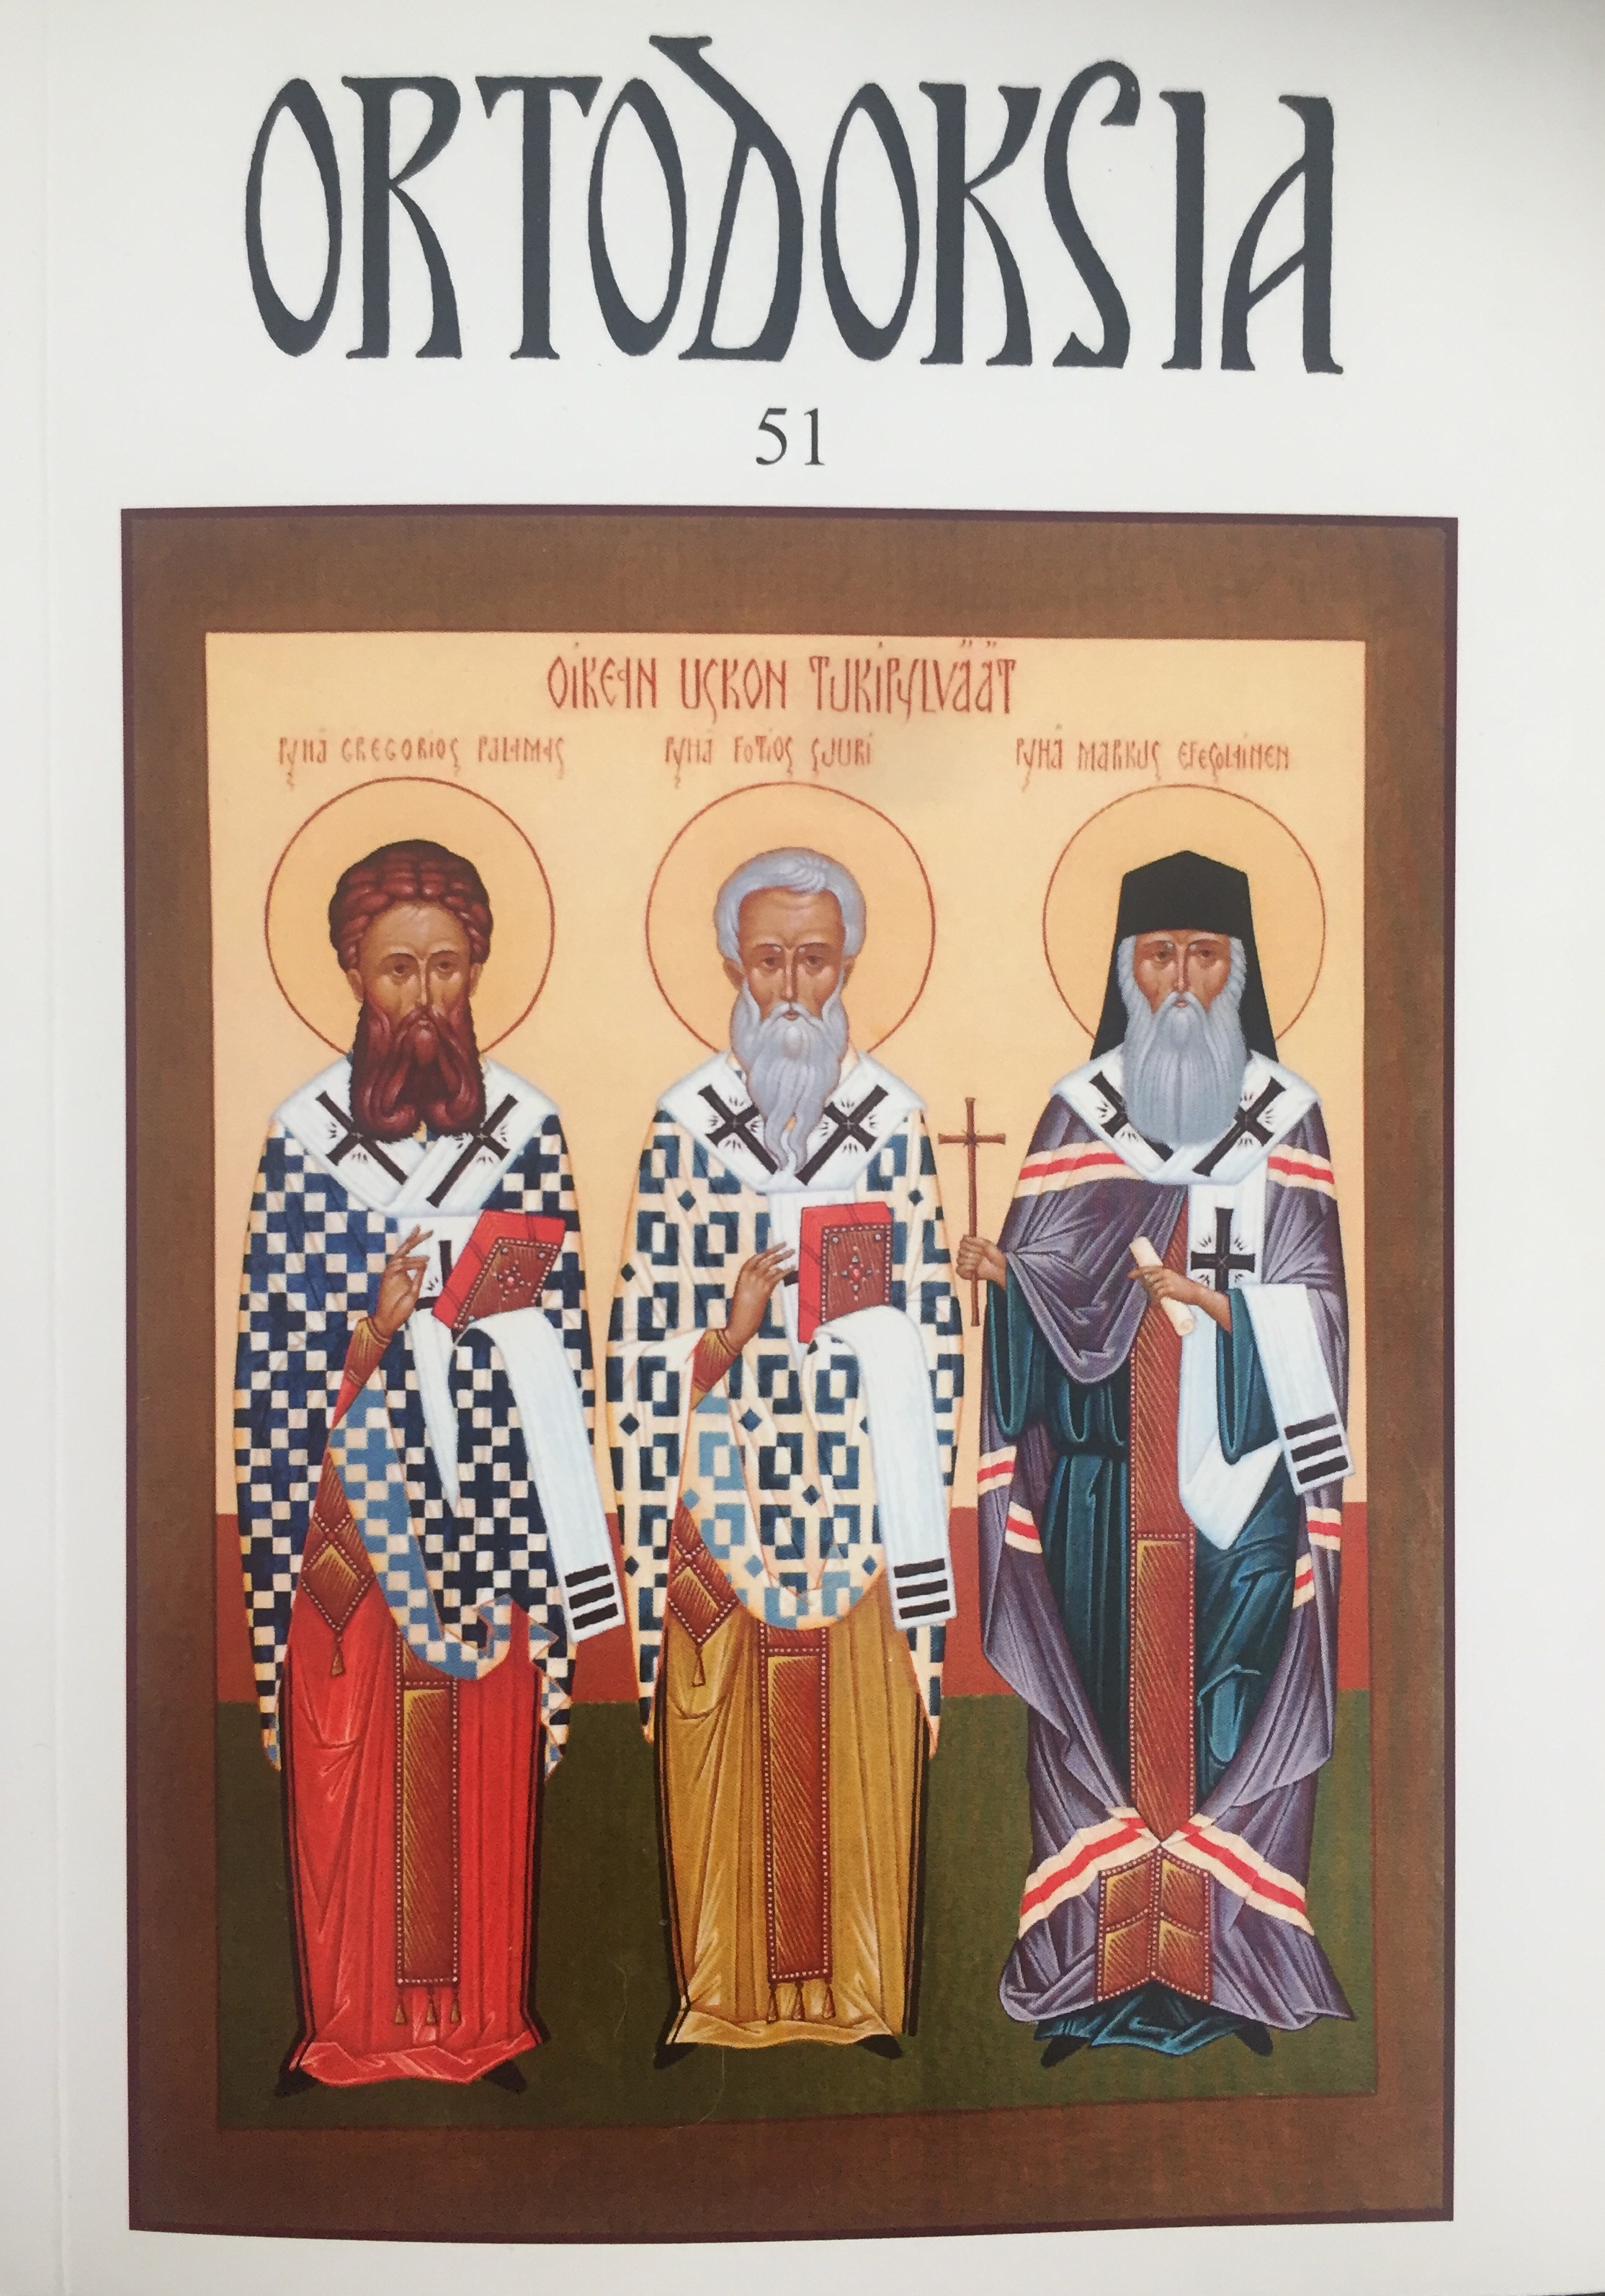 					View Vol. 51 (2010): Ortodoksia 51
				